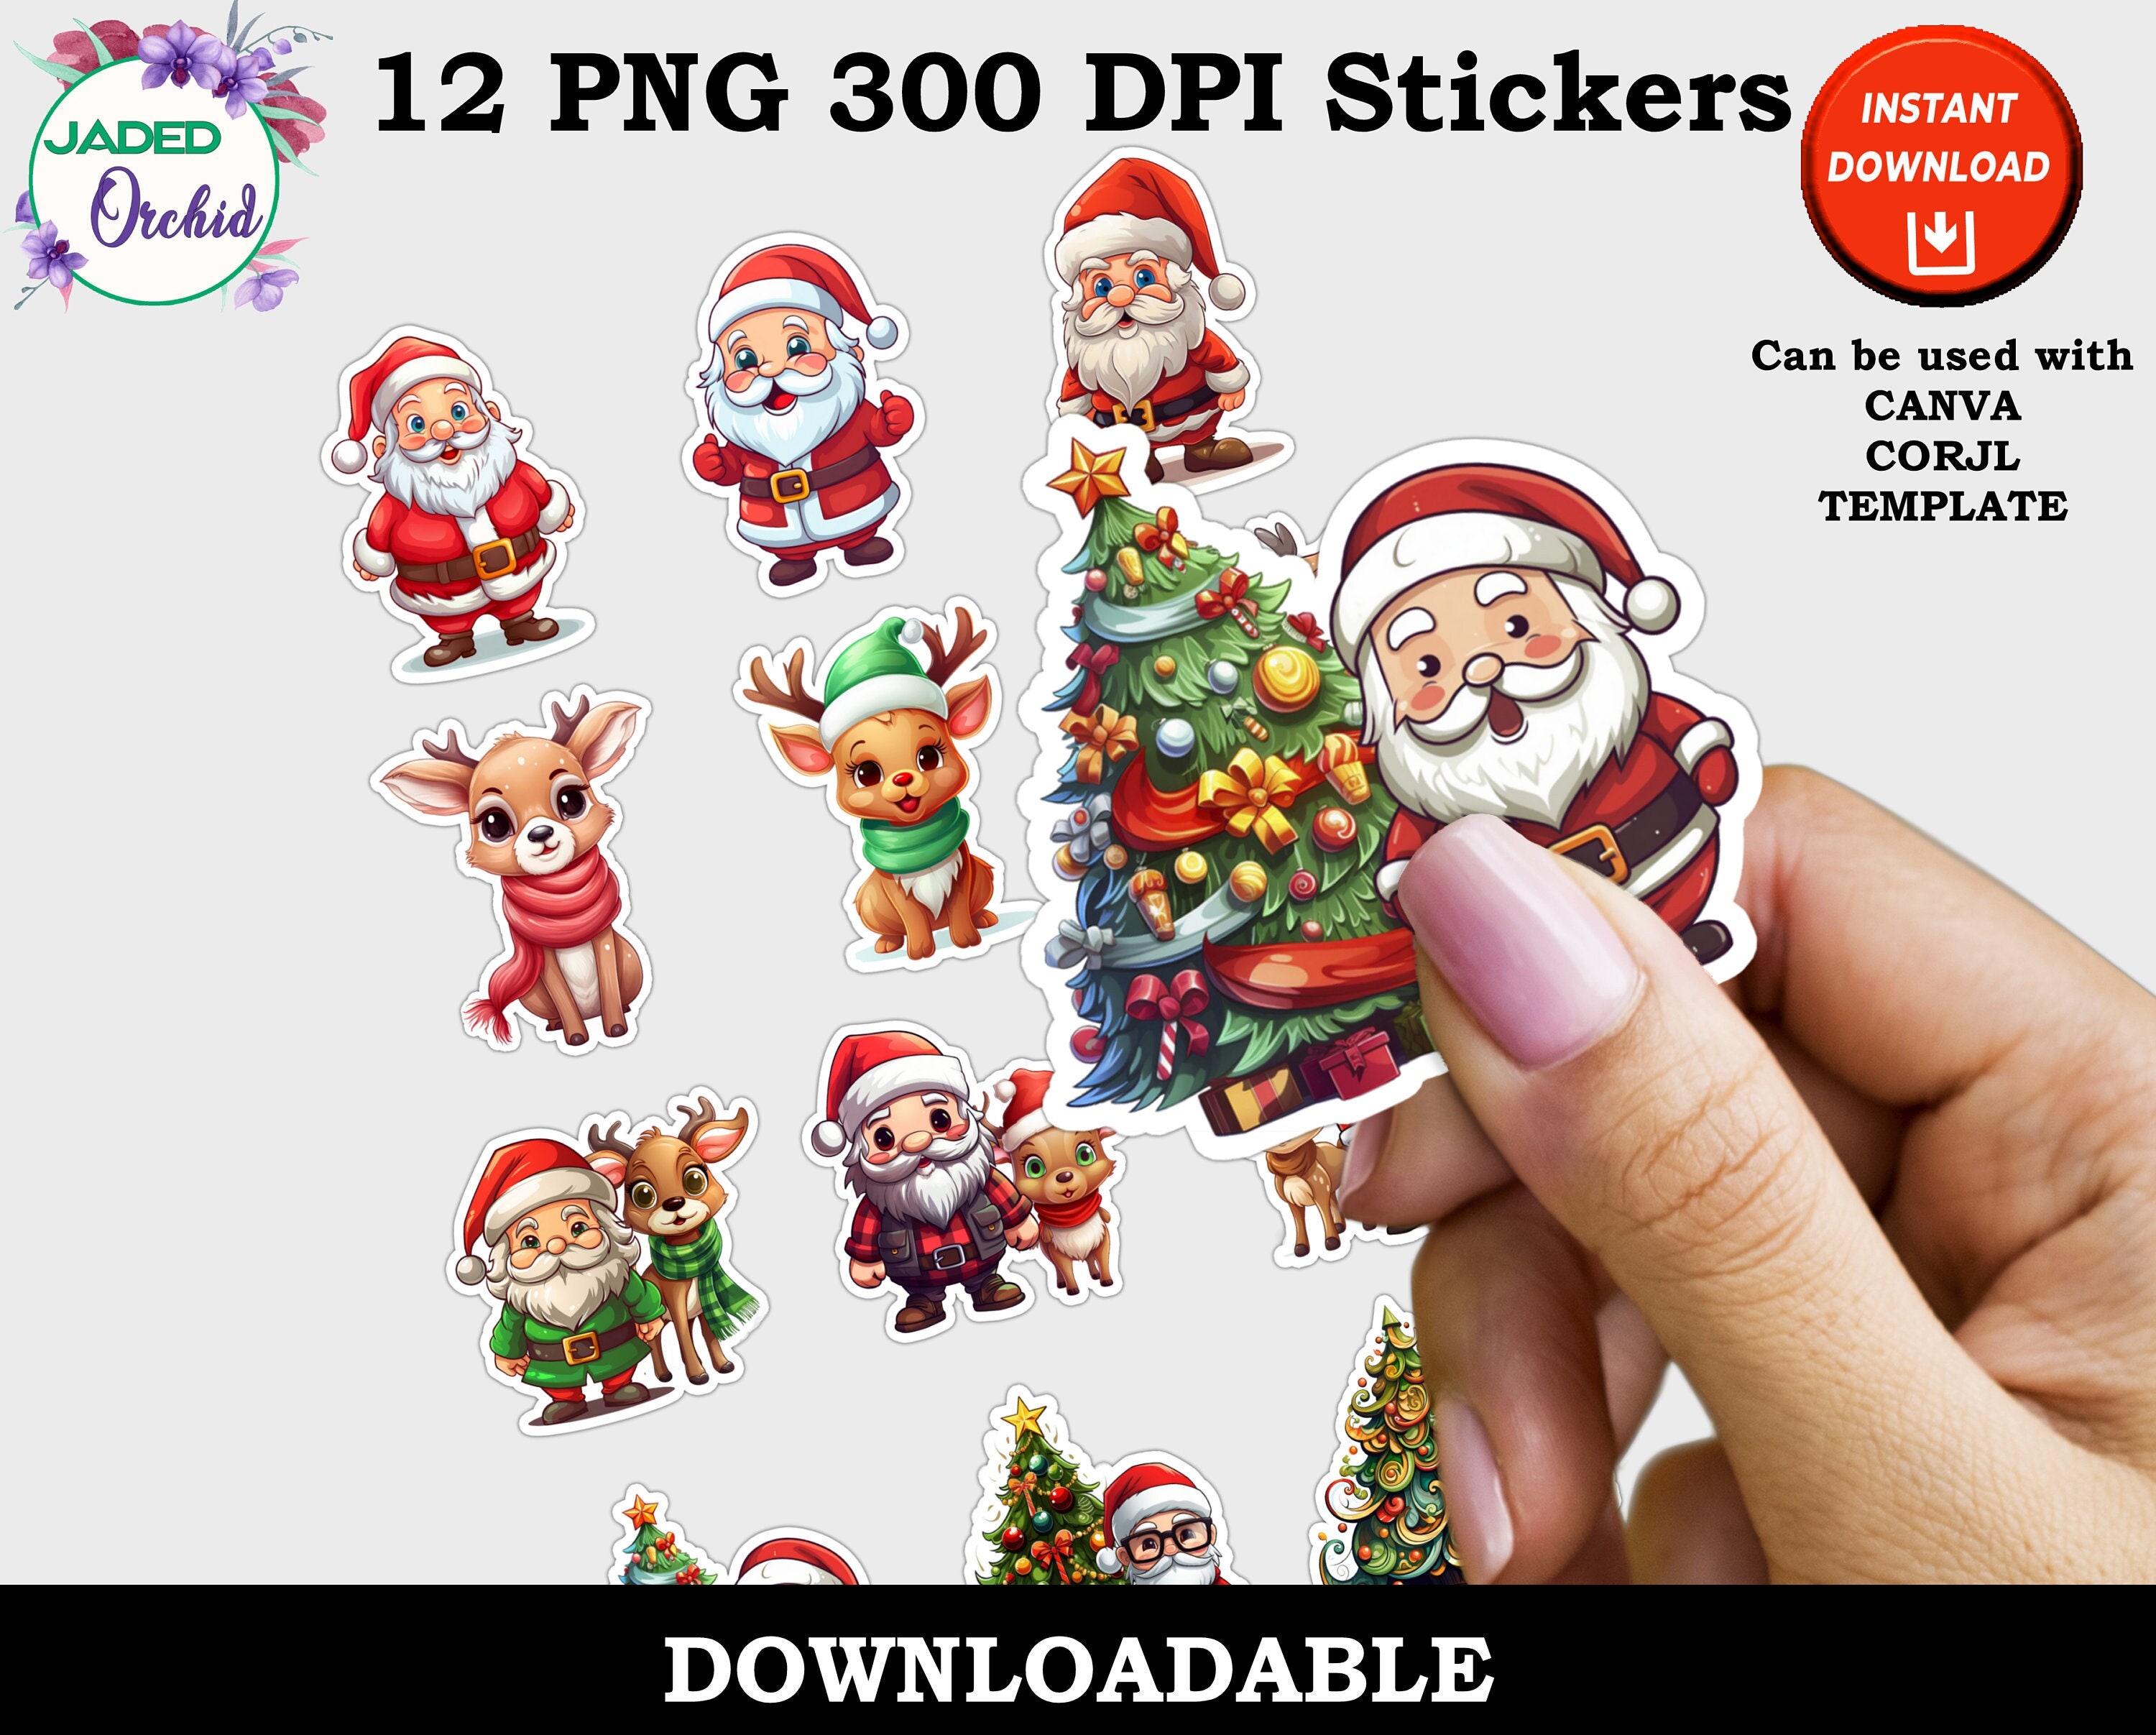 Christmas Stickers, Printable Christmas Gift Stickers, Download Christmas  Sticker, Holiday Sticker, Santa Stickers, Father Christmas 